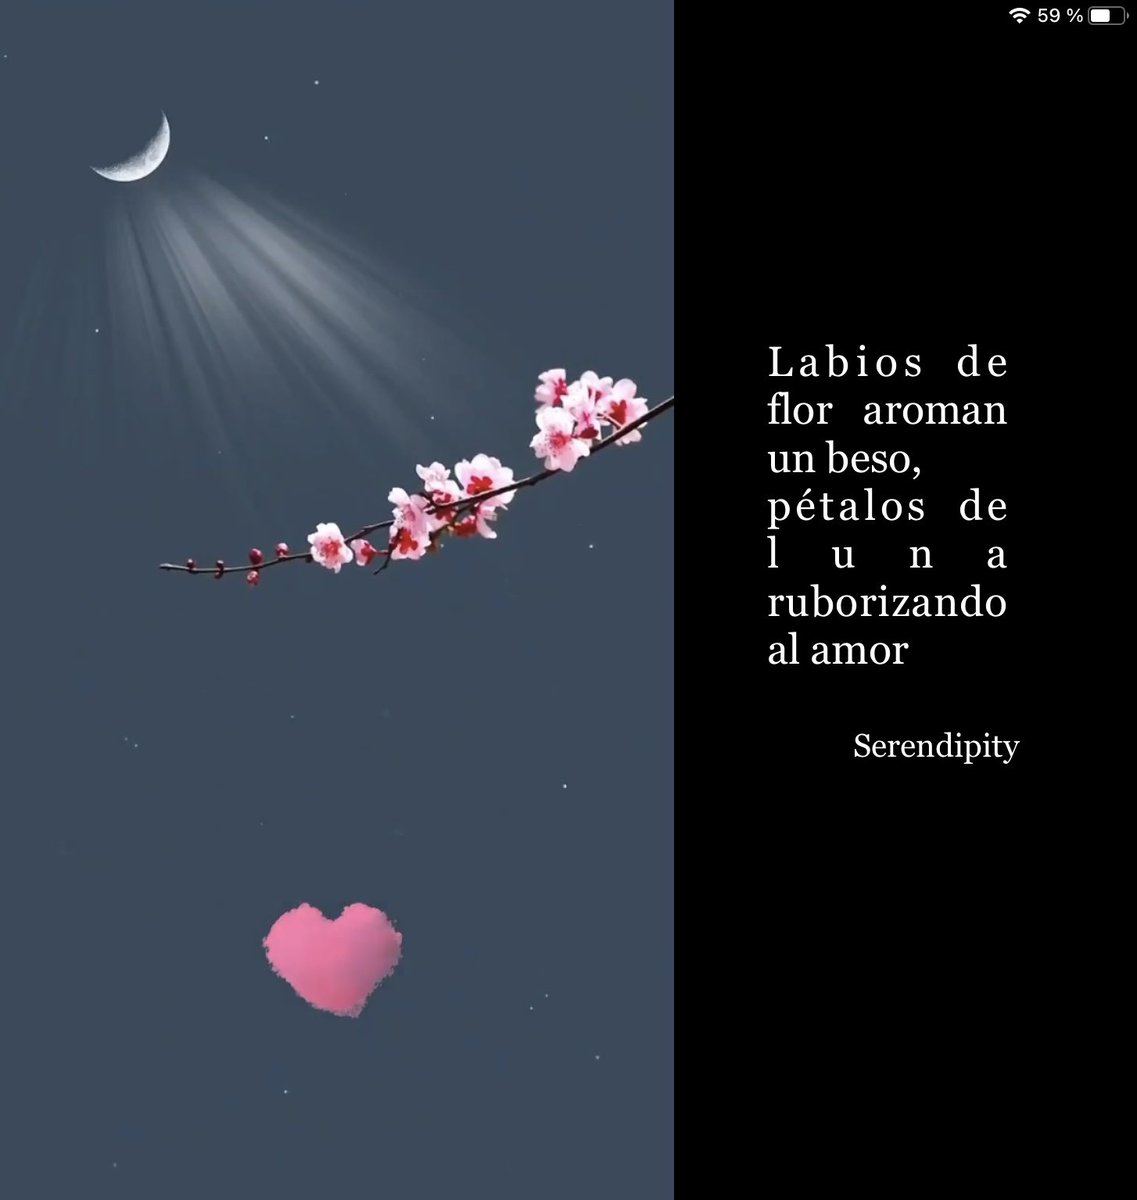 🩶

Labios
de flor
aroman
un beso,

pétalos
de luna
ruborizando
al amor

#12PalabrasalViento